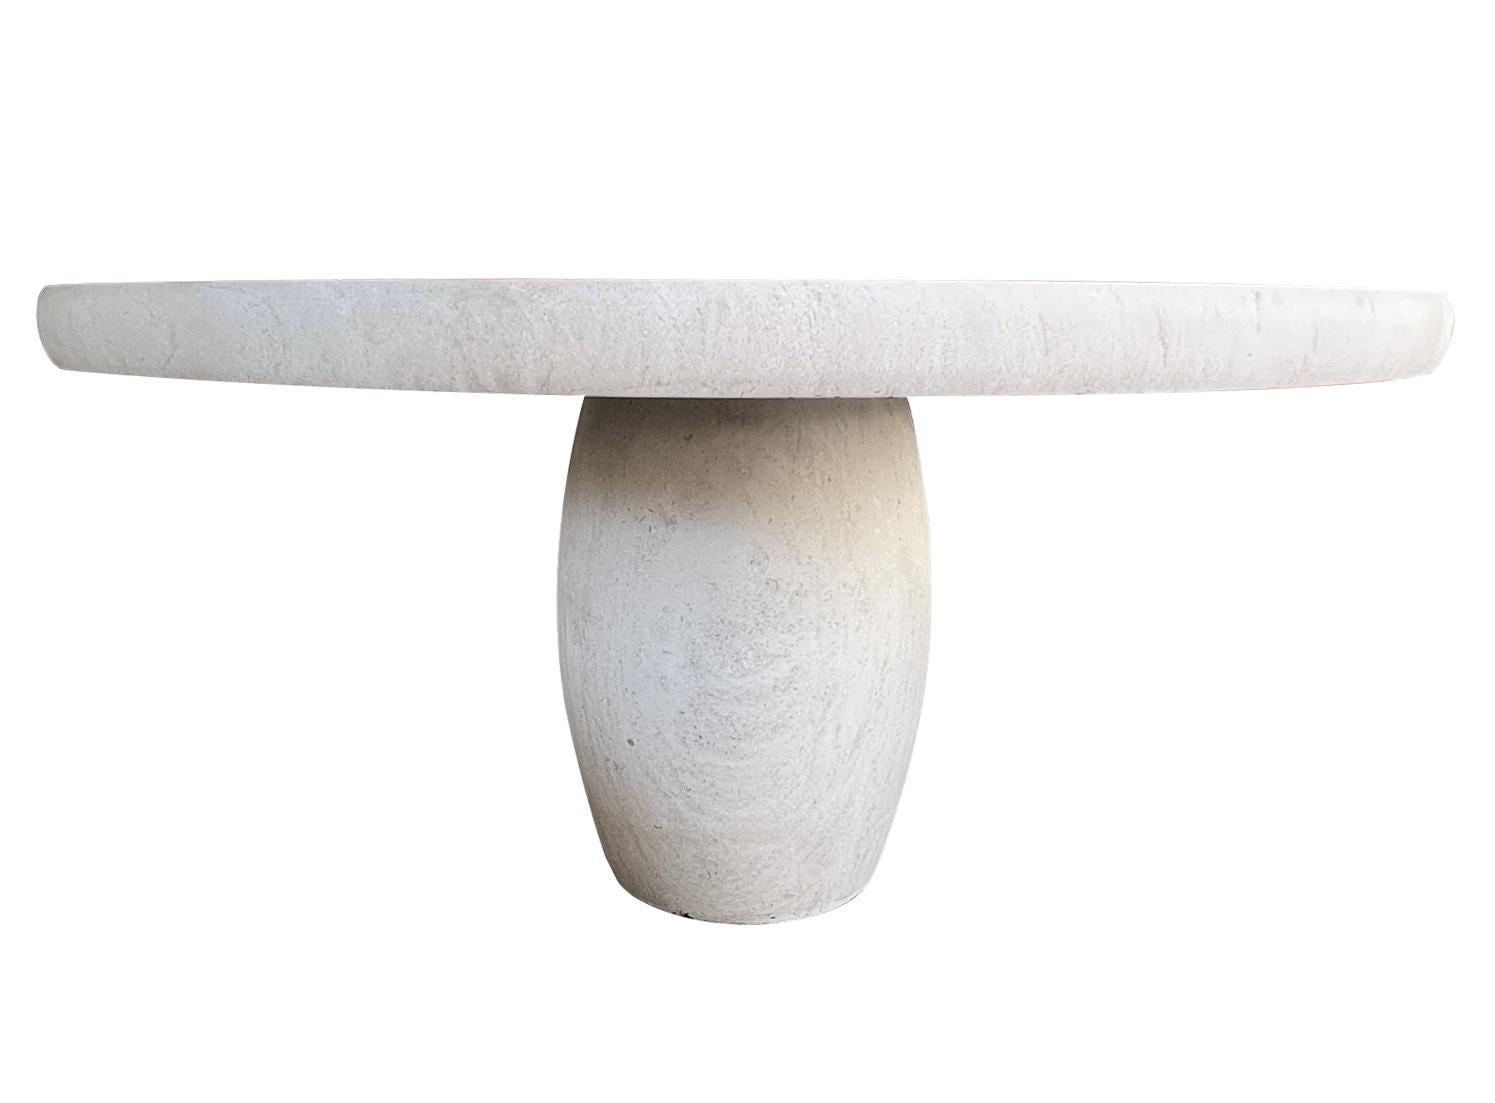 Fabriquée en France à partir de pierre calcaire française, la table se compose d'un épais plateau rond à bord arrondi et d'un support en forme de tonneau. Neuve avec seulement une usure minimale attendue ; la table est idéale pour les projets